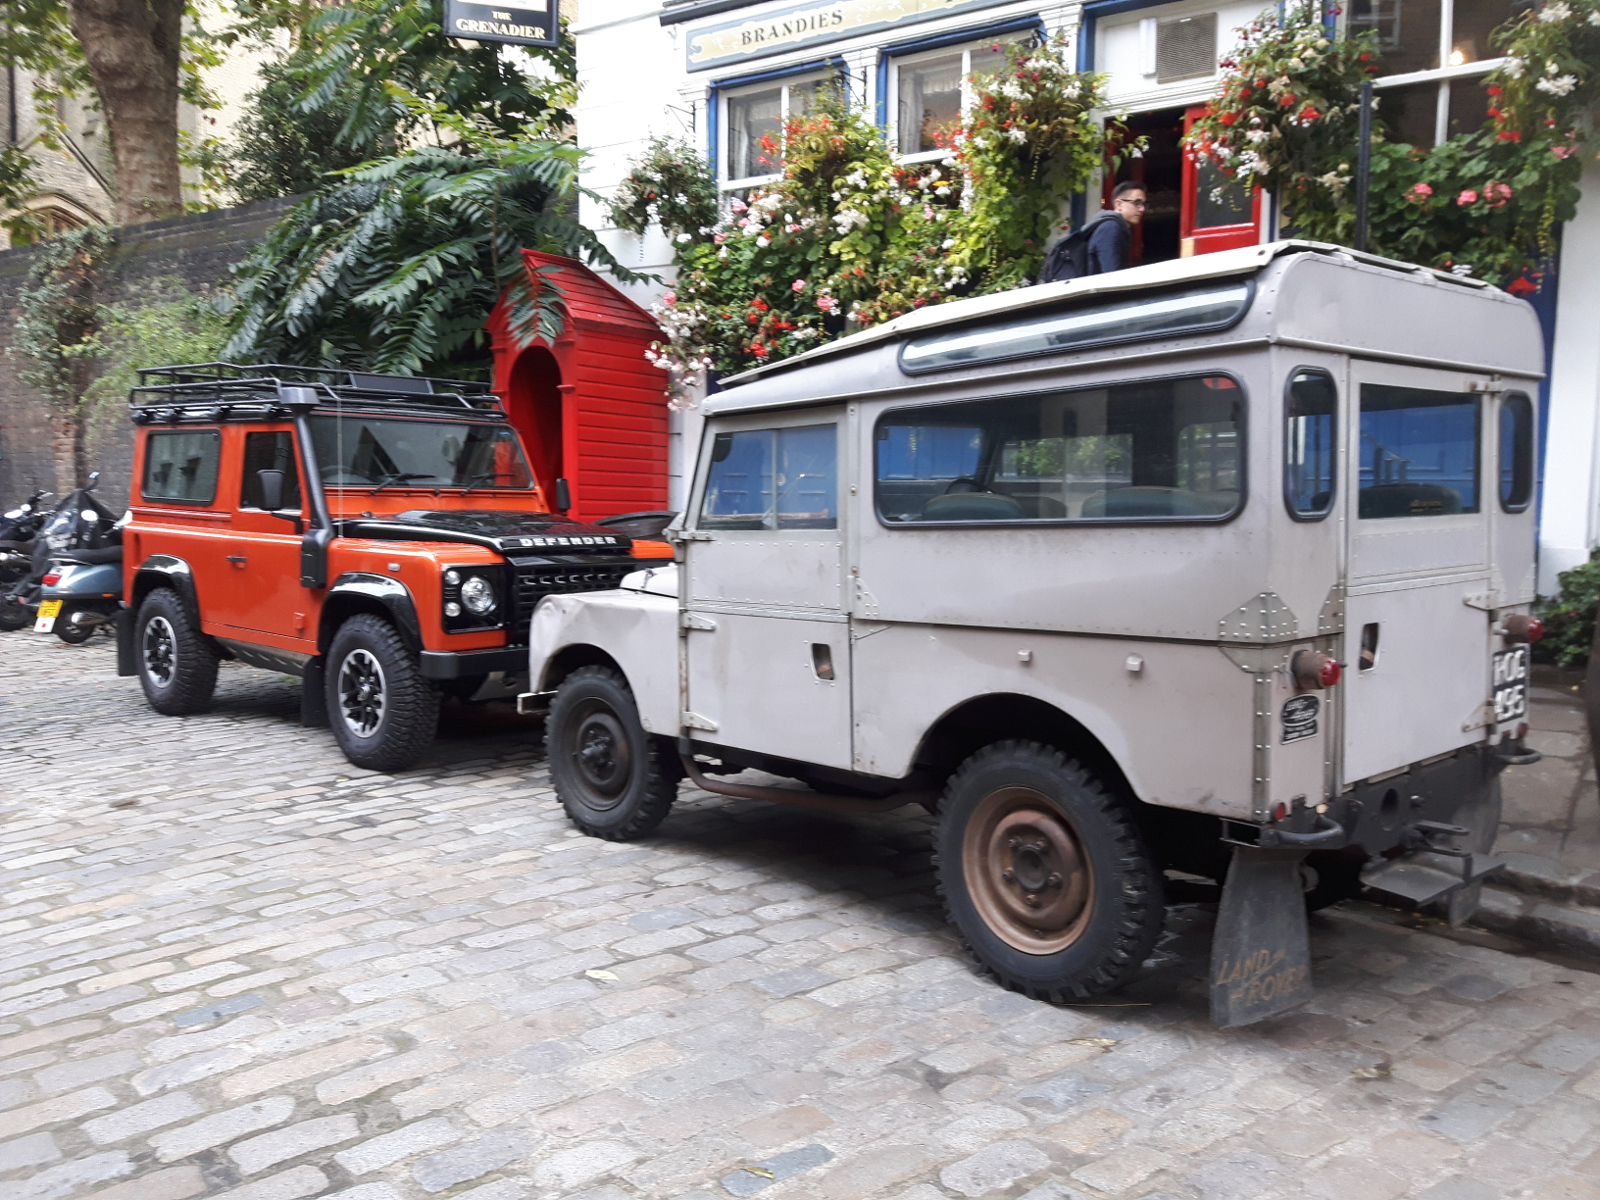 Zwischen diesen beiden Land Rover Modellen liegen gute 60 Jahre Jahre.